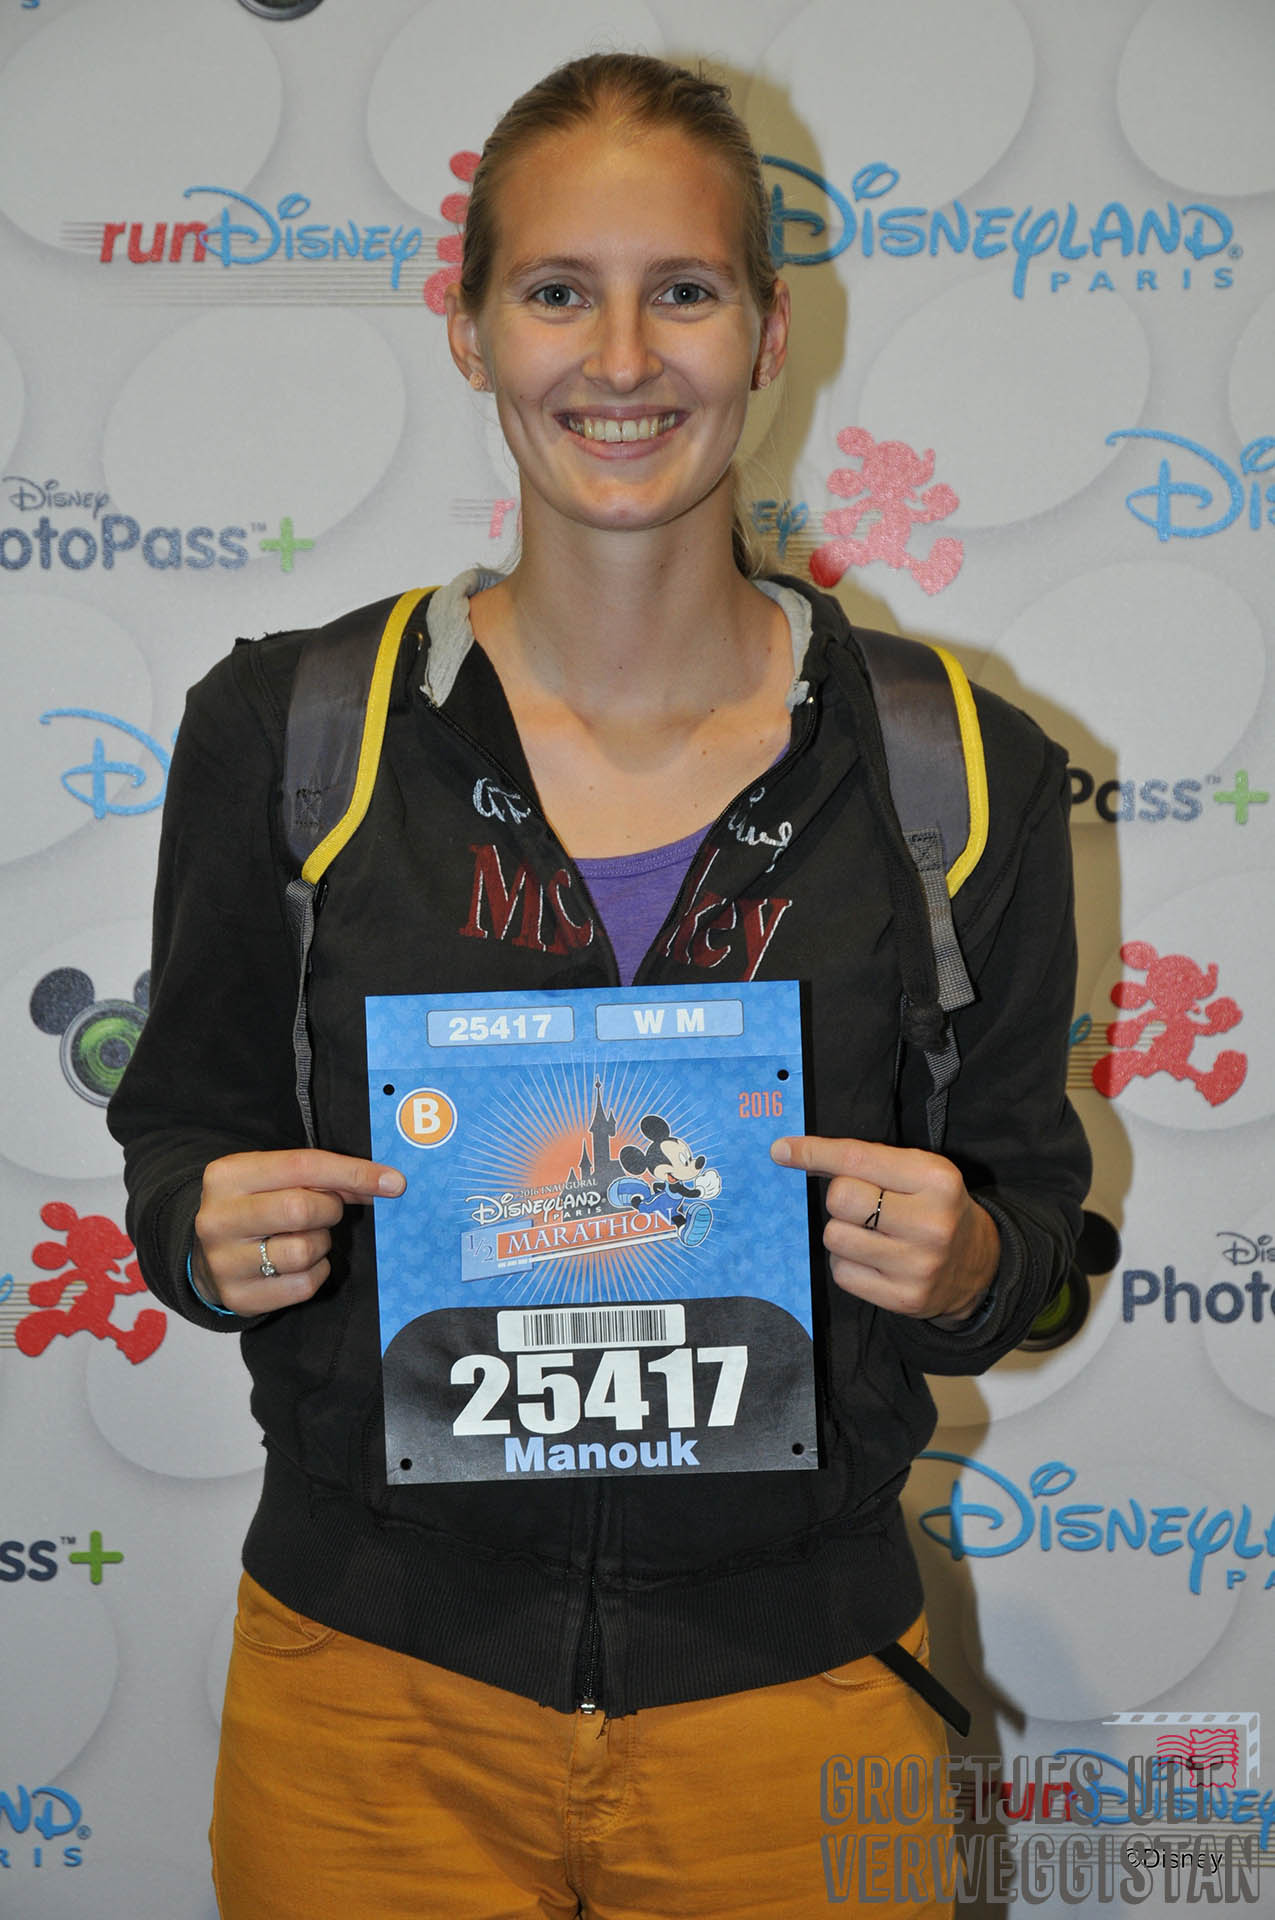 Op de foto met je startnummer voor de halve marathon in Disneyland Paris